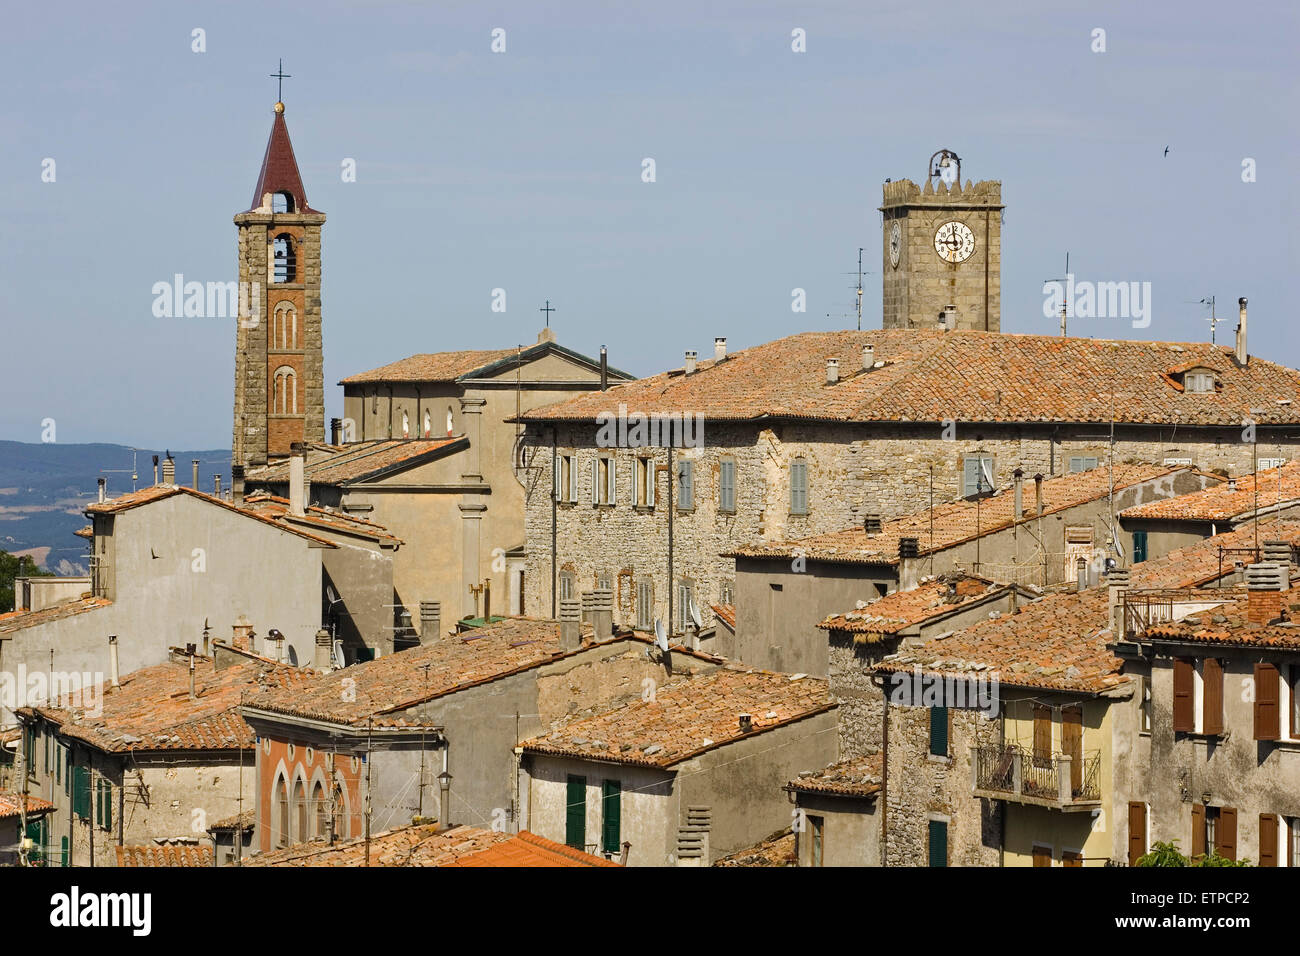 europe, italy, tuscany, castell'azzara Stock Photo